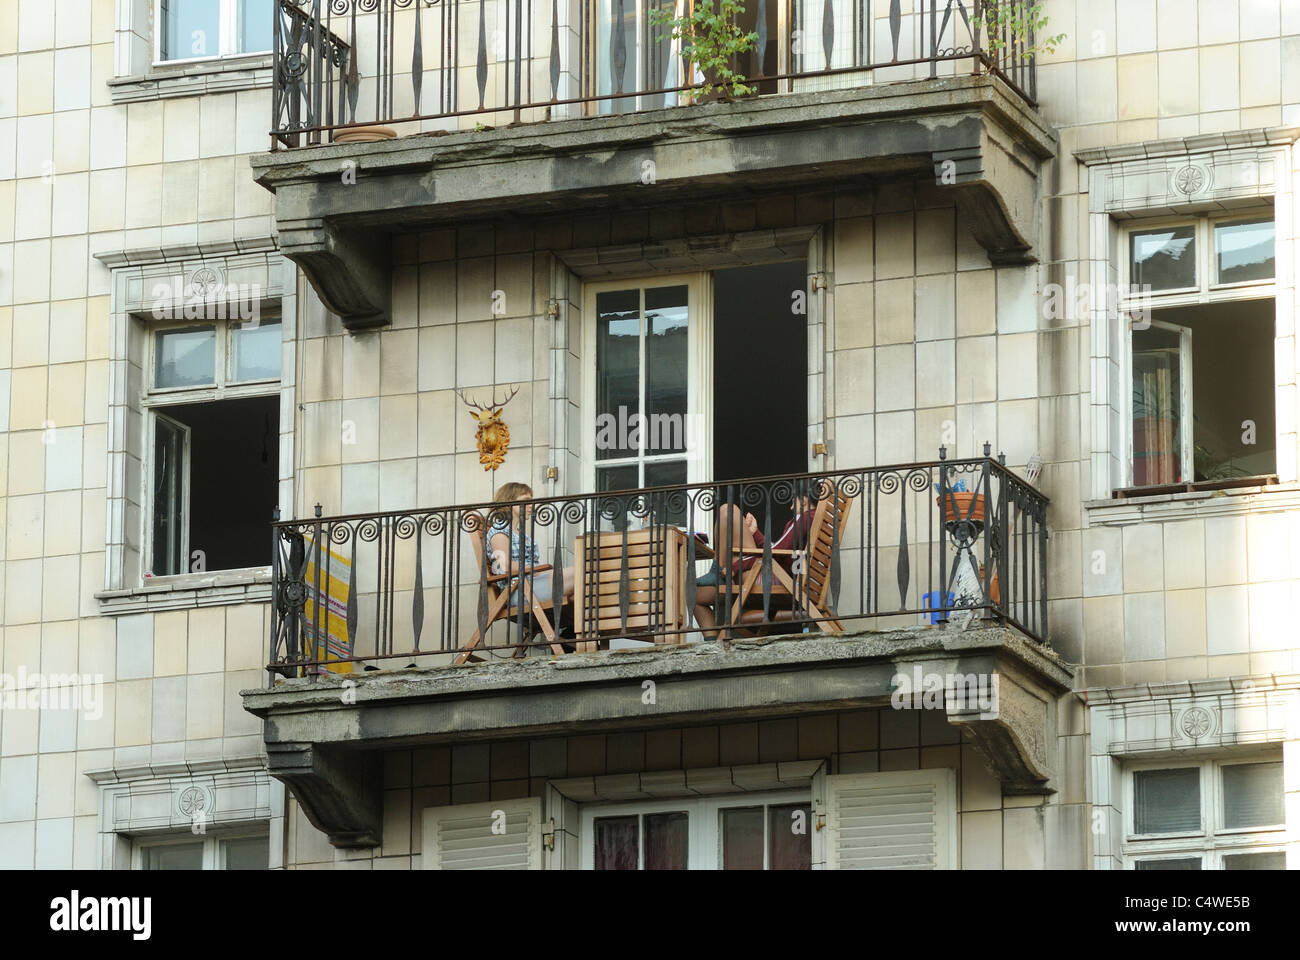 Pintorescos balcones, Karl-Marx-Allee, antigua Stalinallee, representante avenida de la antigua RDA, Friedrichshain, Berlín, Alemania. Foto de stock